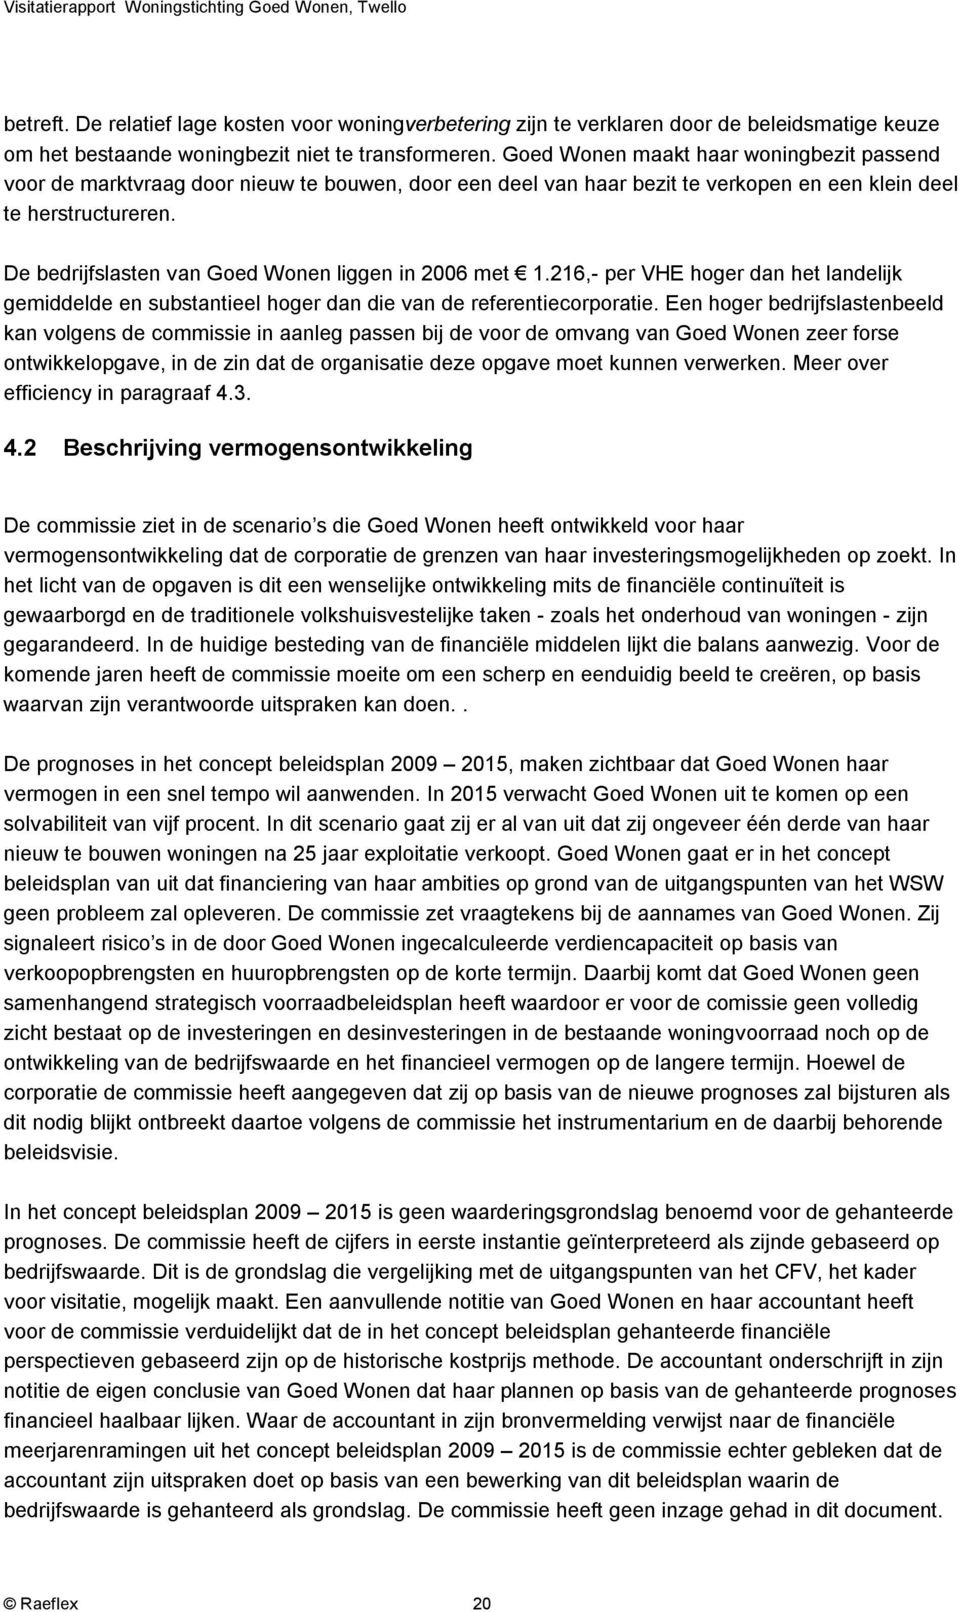 De bedrijfslasten van Goed Wonen liggen in 2006 met 1.216,- per VHE hoger dan het landelijk gemiddelde en substantieel hoger dan die van de referentiecorporatie.